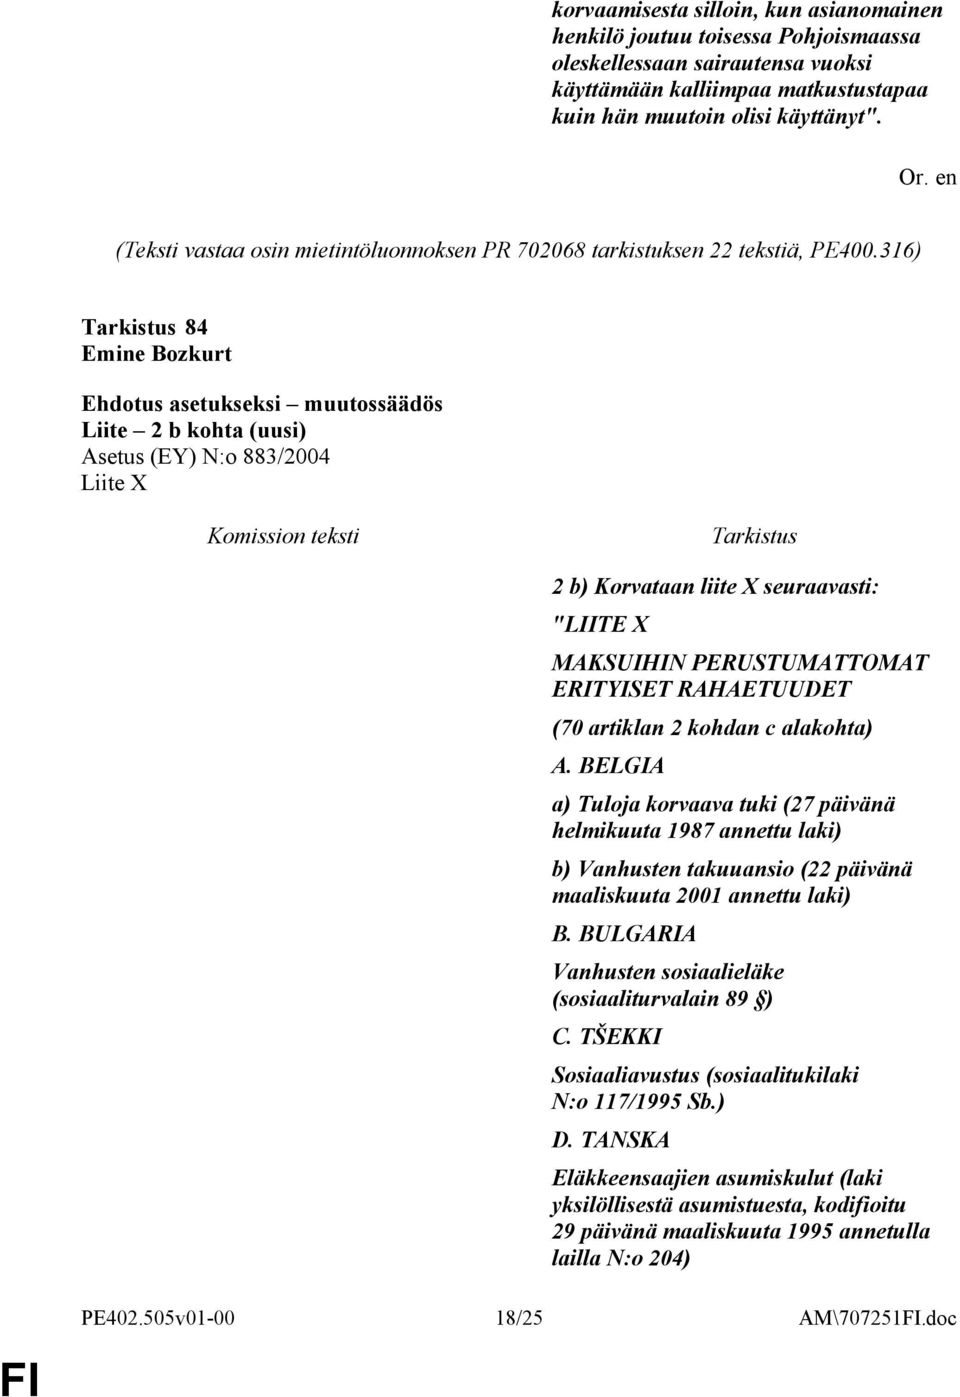 316) Tarkistus 84 Emine Bozkurt Ehdotus asetukseksi muutossäädös Liite 2 b kohta (uusi) Asetus (EY) N:o 883/2004 Liite X Komission teksti Tarkistus 2 b) Korvataan liite X seuraavasti: "LIITE X